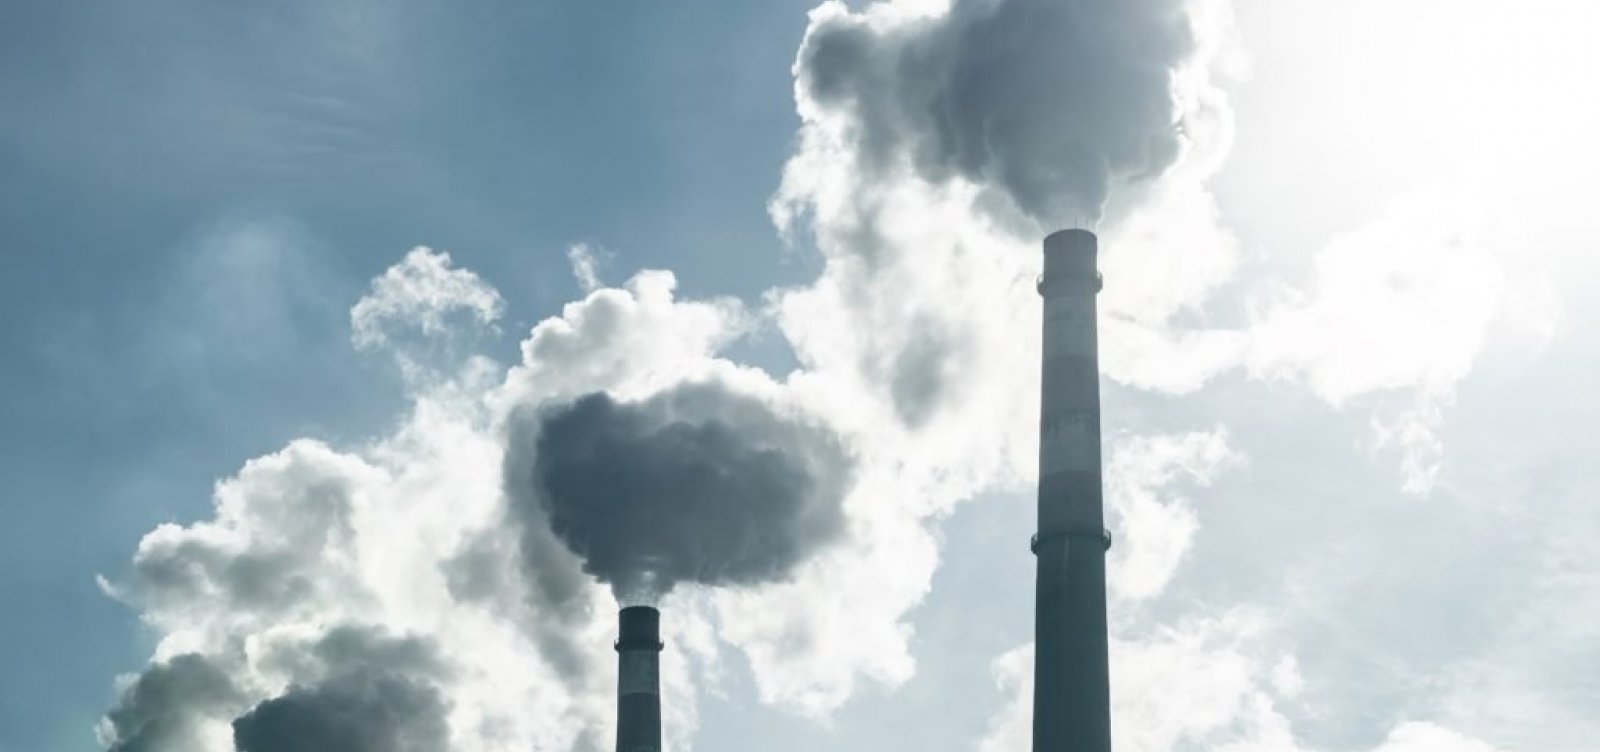 Estudo aponta queda inédita das emissões de CO2 no primeiro semestre de 2020 